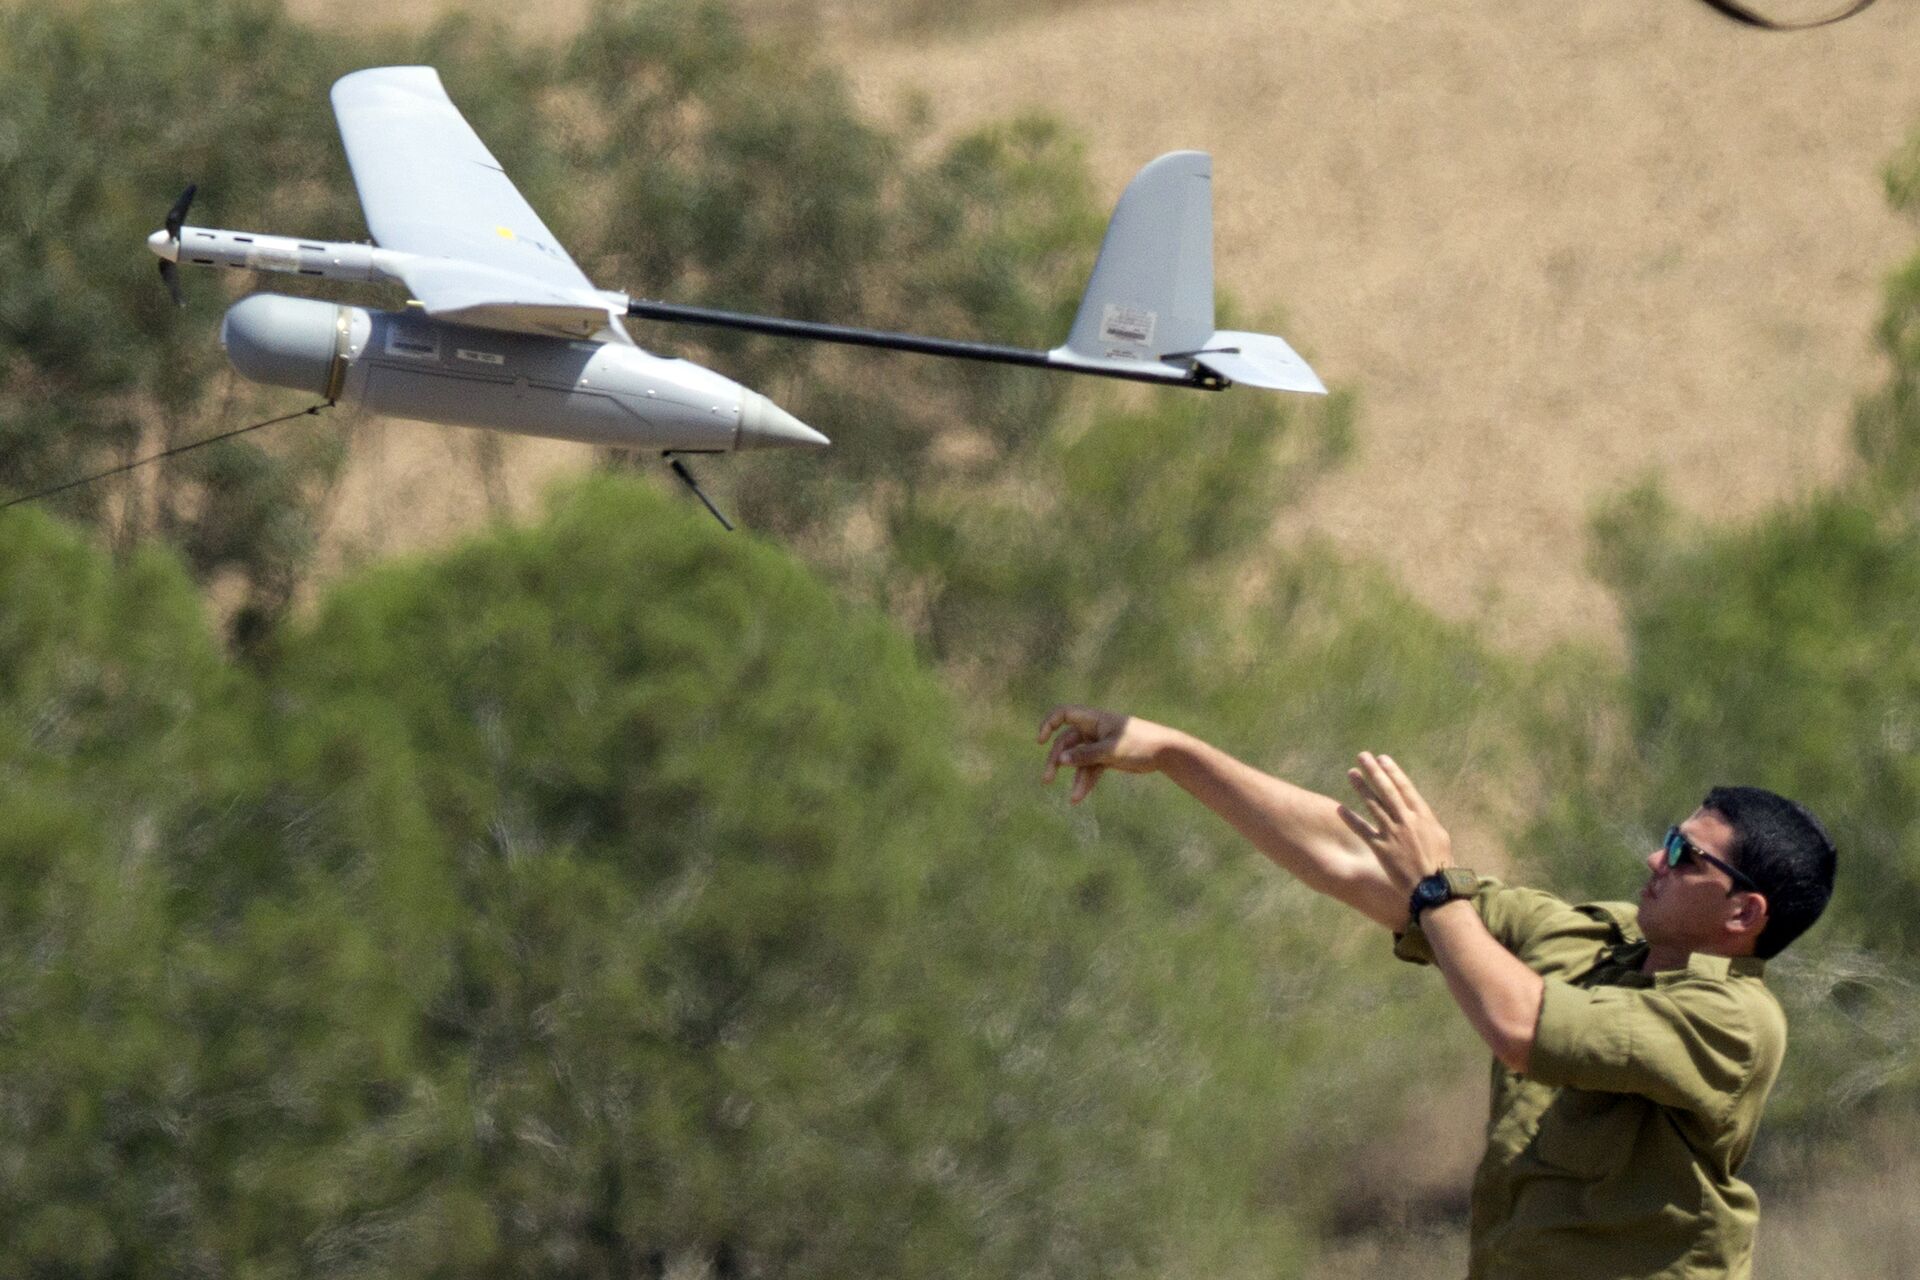 Drone israelense é abatido na Faixa de Gaza por combatentes palestinos, diz mídia - Sputnik Brasil, 1920, 01.02.2021